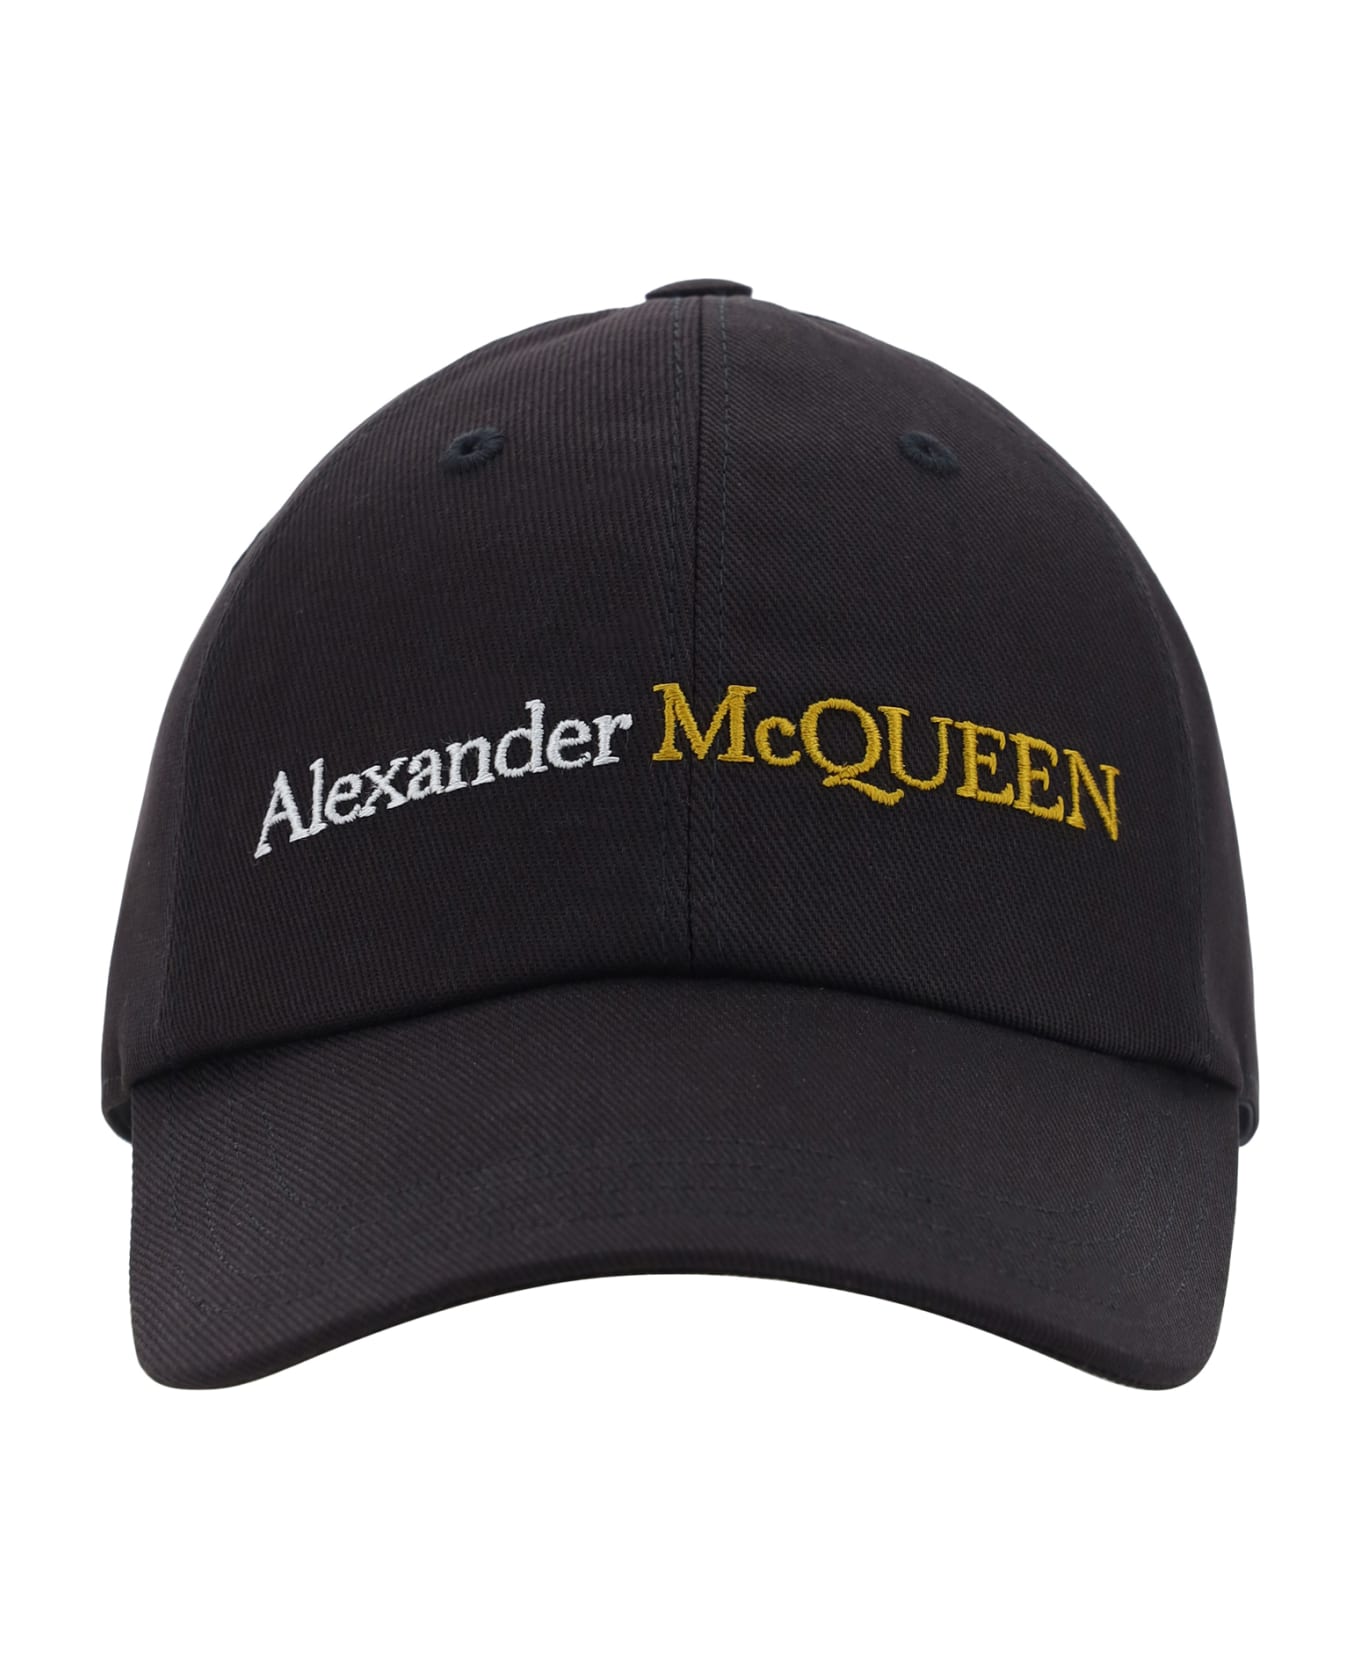 Alexander McQueen Logo Embroidered Baseball Cap - Black/gold